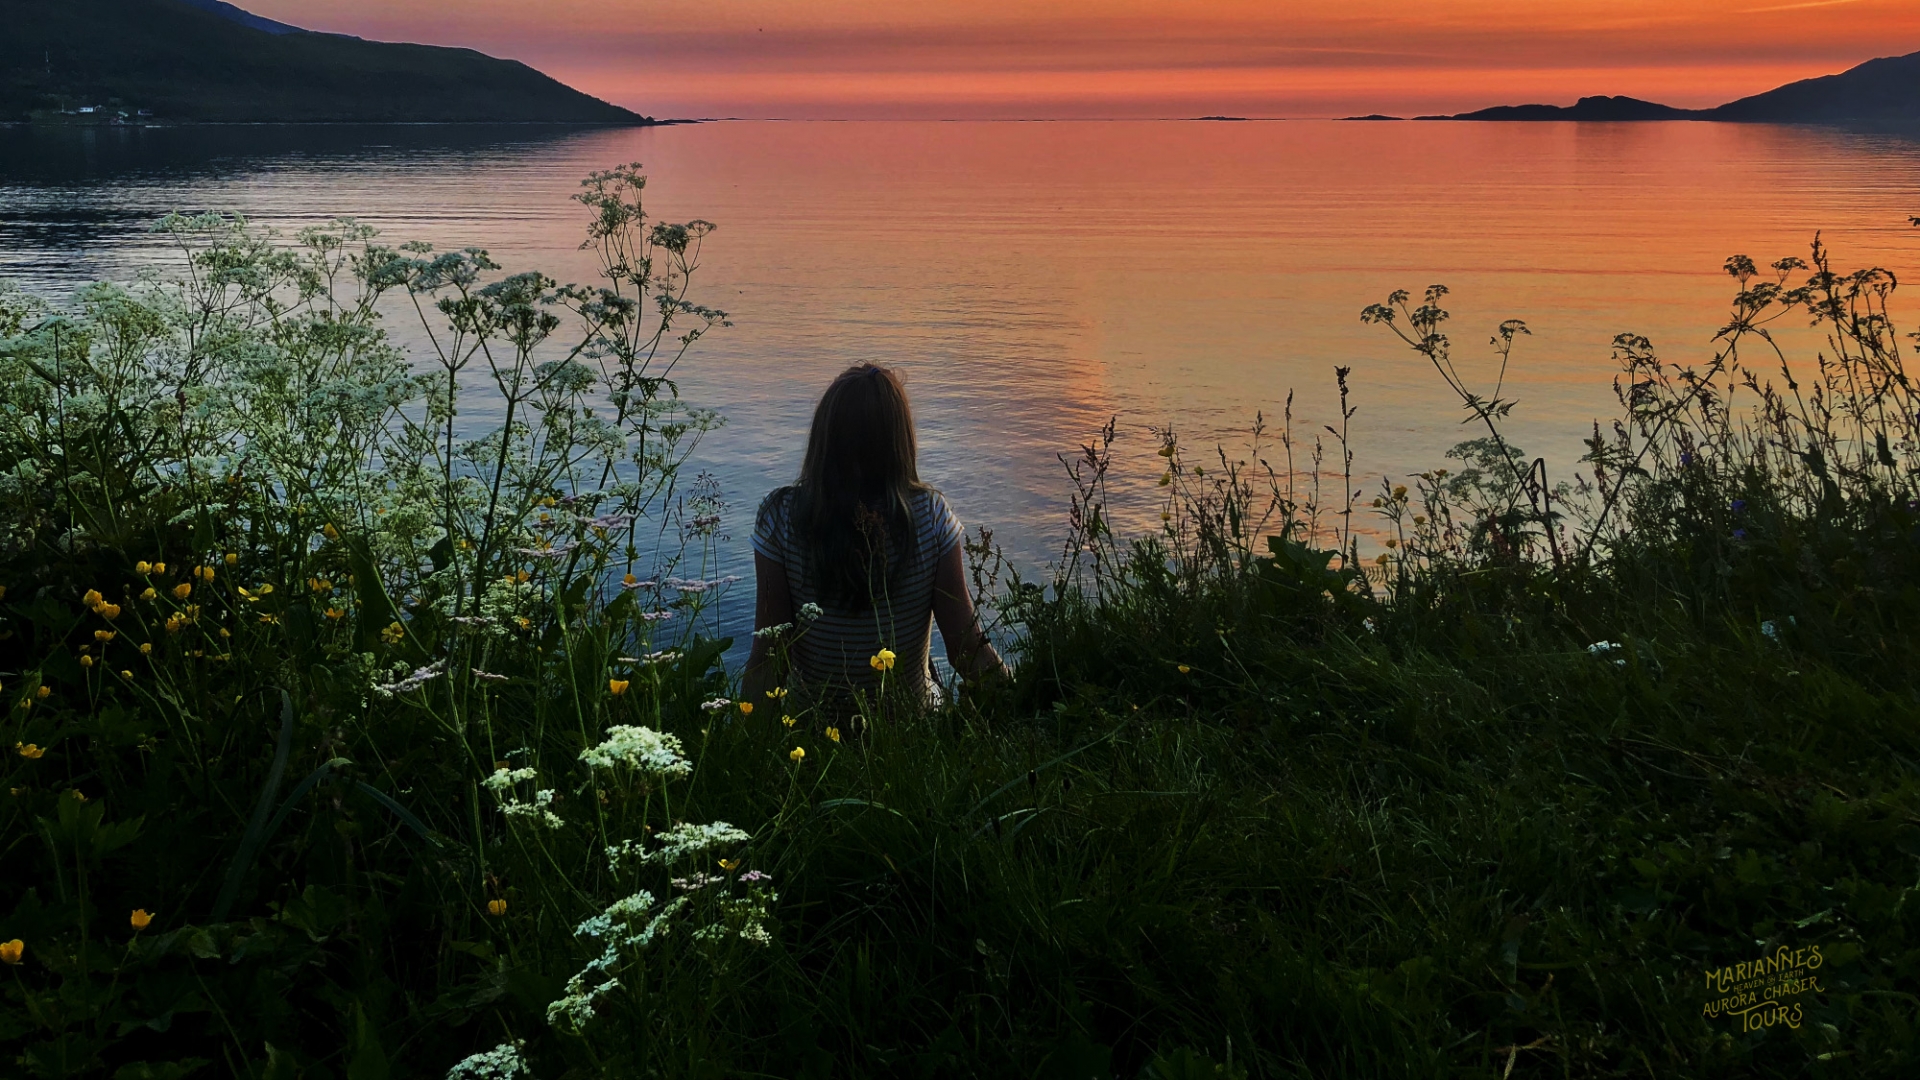 Jente i solnedgang ved havet